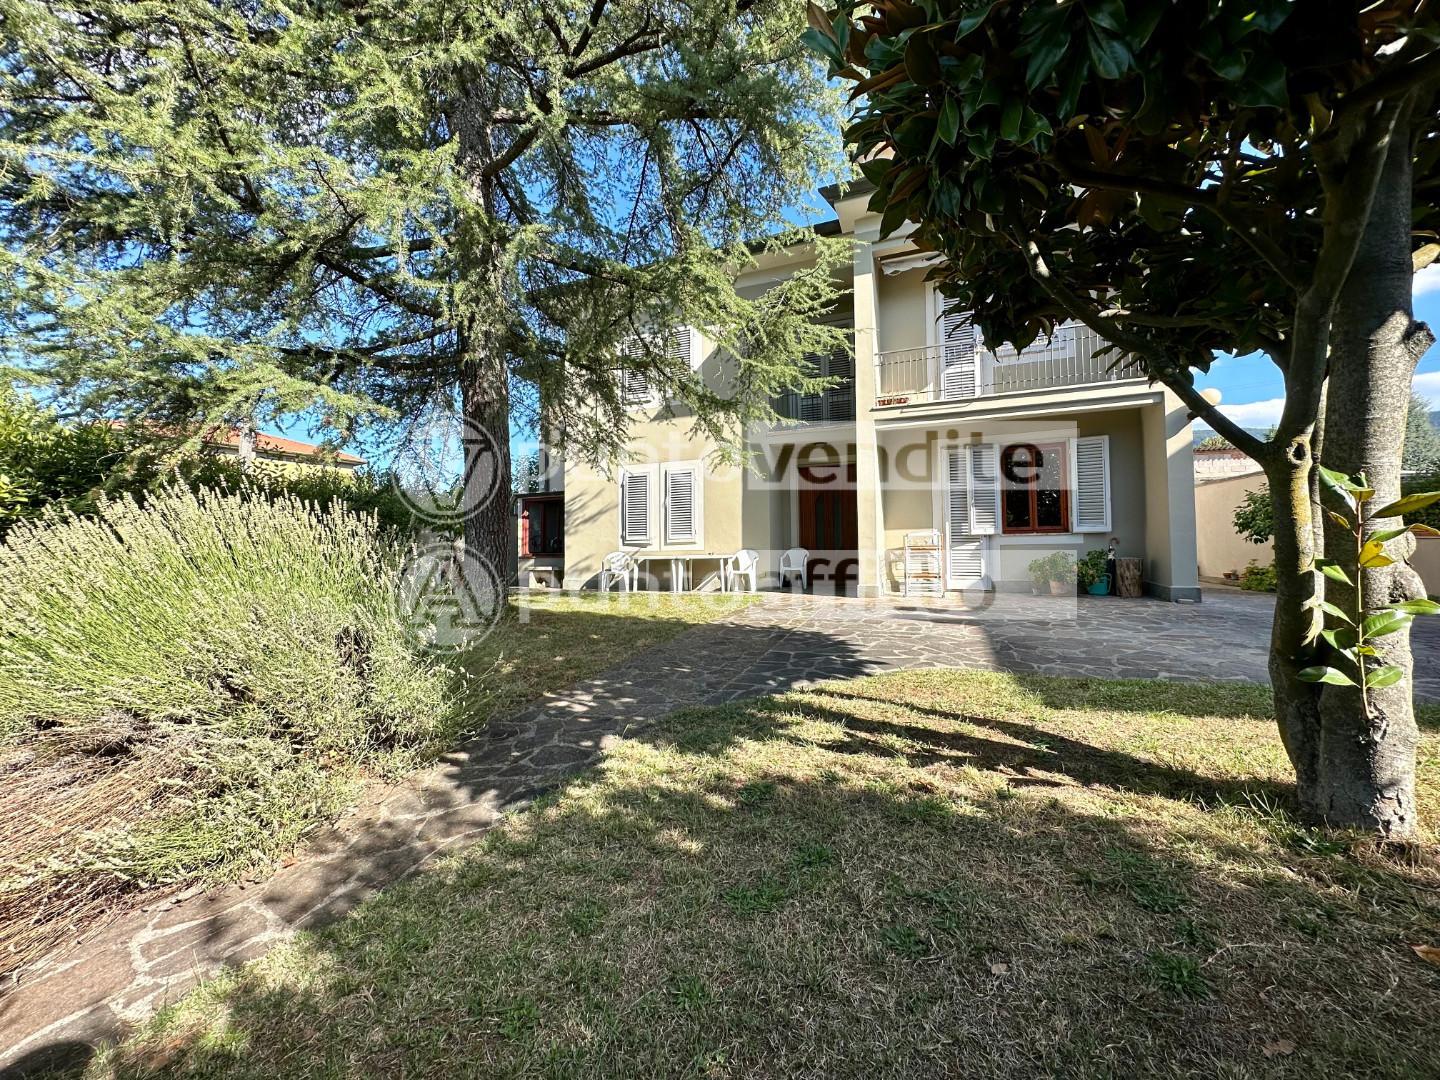 Villa Bifamiliare in vendita a Capannori, 8 locali, prezzo € 310.000 | PortaleAgenzieImmobiliari.it